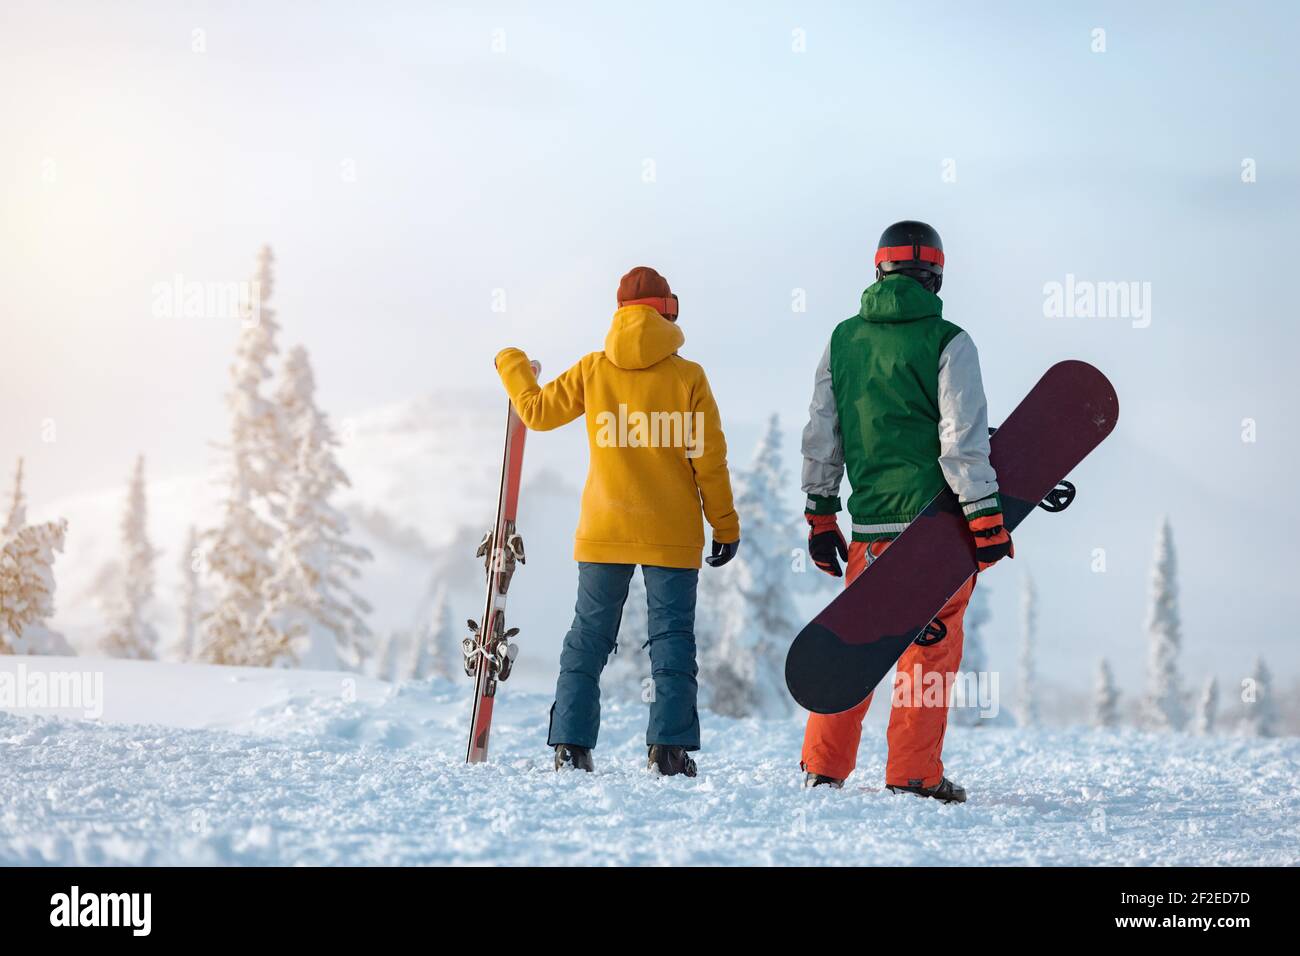 Le skieur femelle et le snowboardeur mâle sont debout sur fond de montagne enneigée au coucher du soleil. Concept de station de ski Banque D'Images